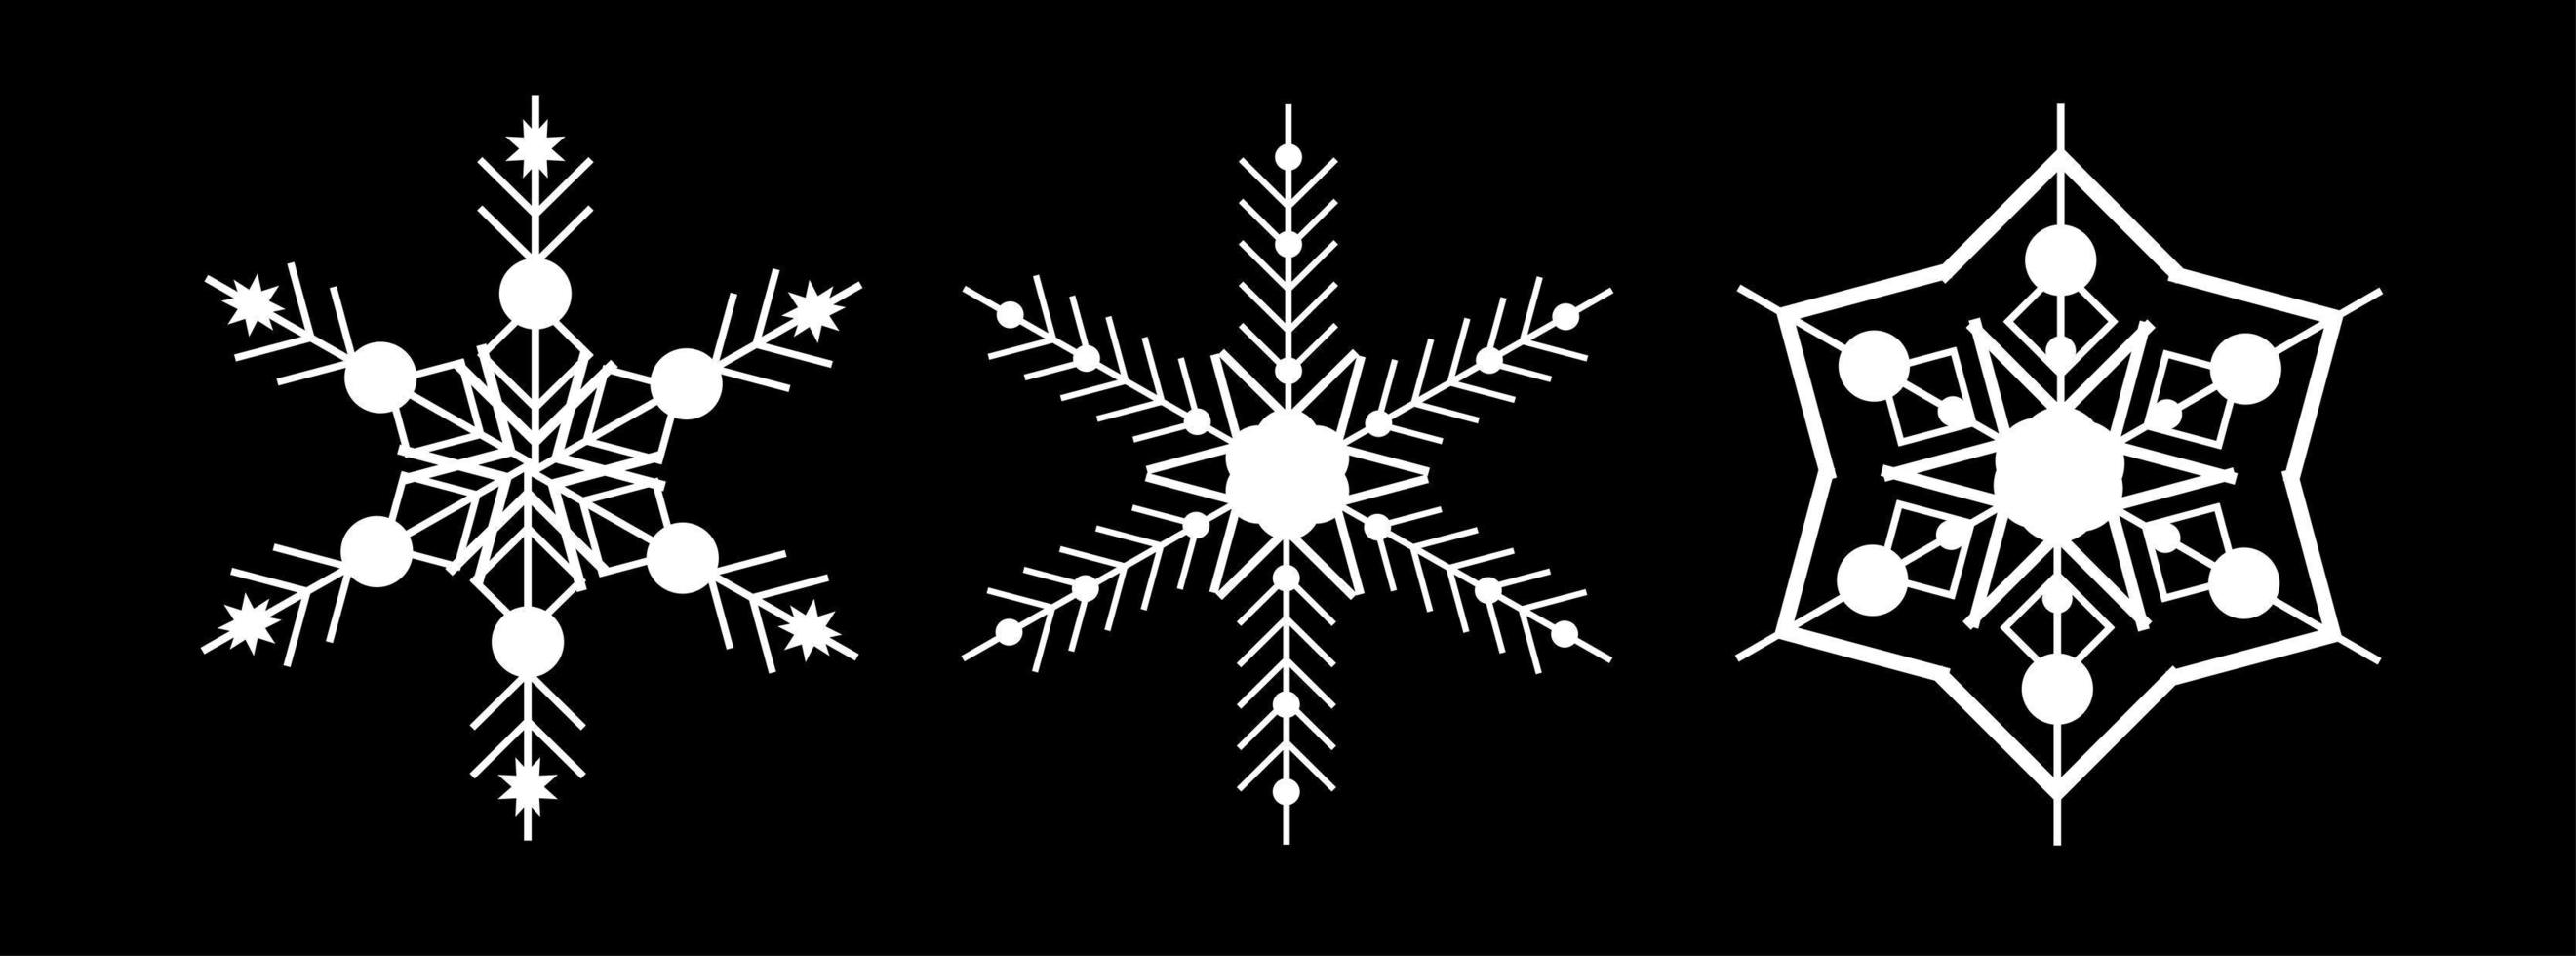 stellen Sie weiße Schneeflocke auf einem schwarzen Hintergrund ein. Dekor für Weihnachten und Neujahr Design von Karten, Bannern, Websites, Symbolen. elegante geometrische lineare Vektorgrafik. vektor